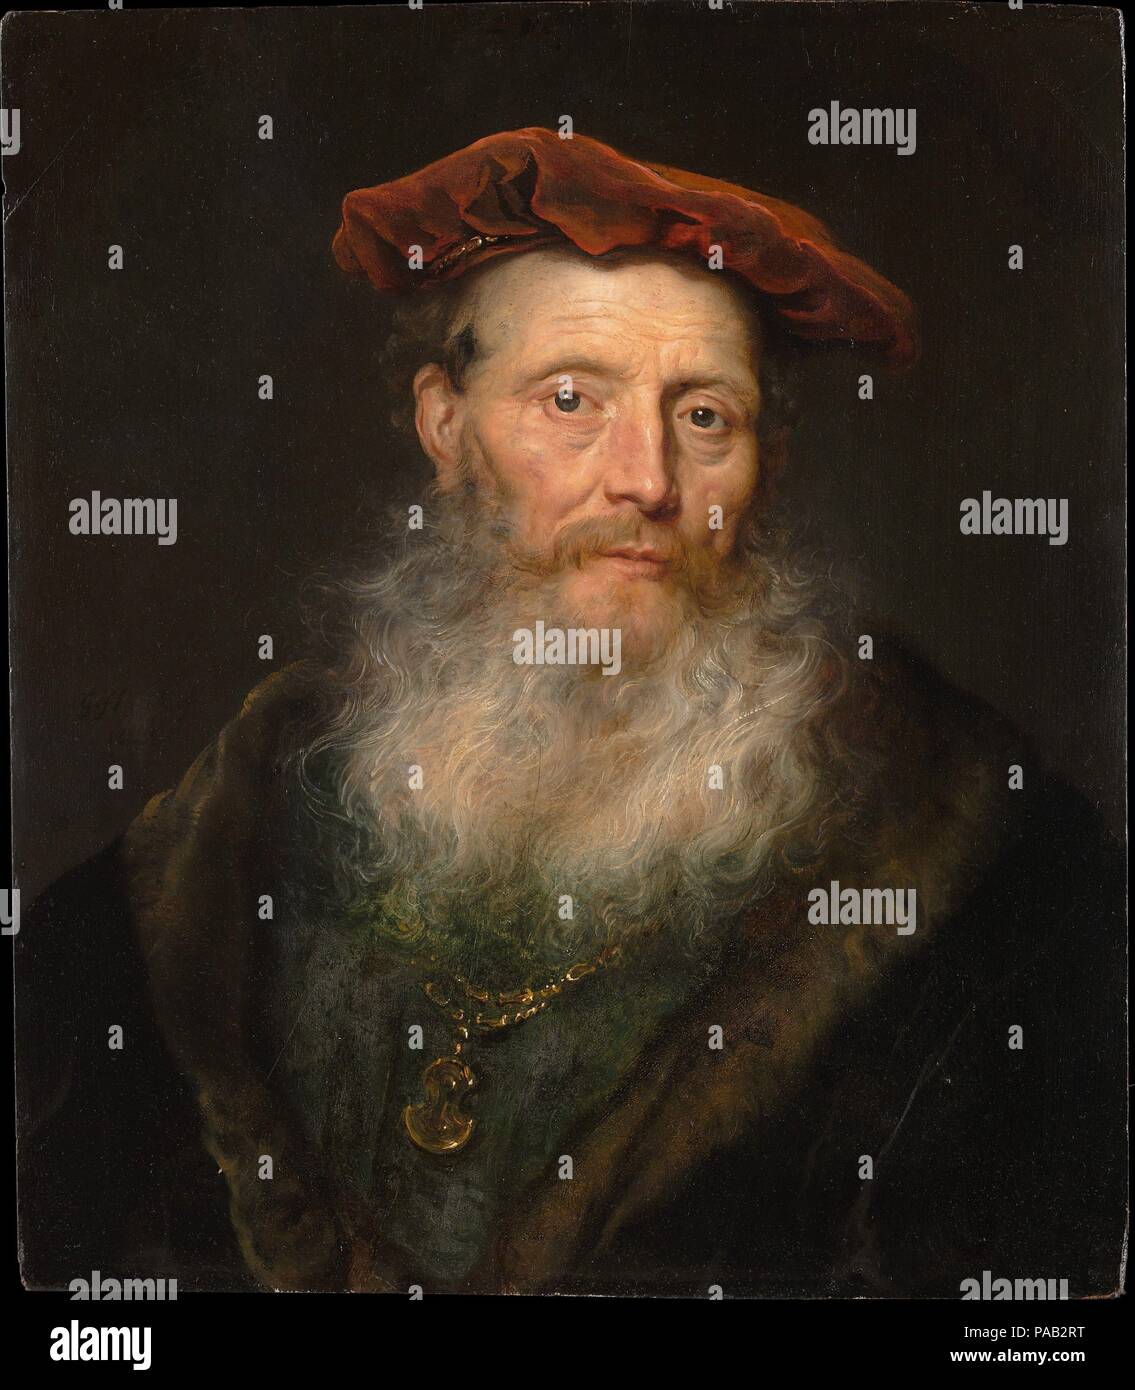 Hombre Barbado con una tapa de terciopelo. Artista: Govert Flinck (Holandés, Cleve 1615-1660 Amsterdam). Dimensiones: 23 3/4 x 20 5/8 pulg. (60,3 x 52,4 cm). Fecha: 1645. Sin duda un modelo en vivo sirvió para este valiente personaje en traje romántico y un pulido brillante barba. La imagen es una <i>tronie</i> (es decir, cara o expresión), en la que tanto el sujeto y la técnica, pretendían apelar a los amantes del arte. Flinck pintó este cuadro sobre su propio acabado retrato de una mujer formal, ahorrando así el panel de madera de una comisión que de alguna manera se han esfumado. Museo: Museo Metropolitano de Arte, Nueva York, Estados Unidos. Foto de stock